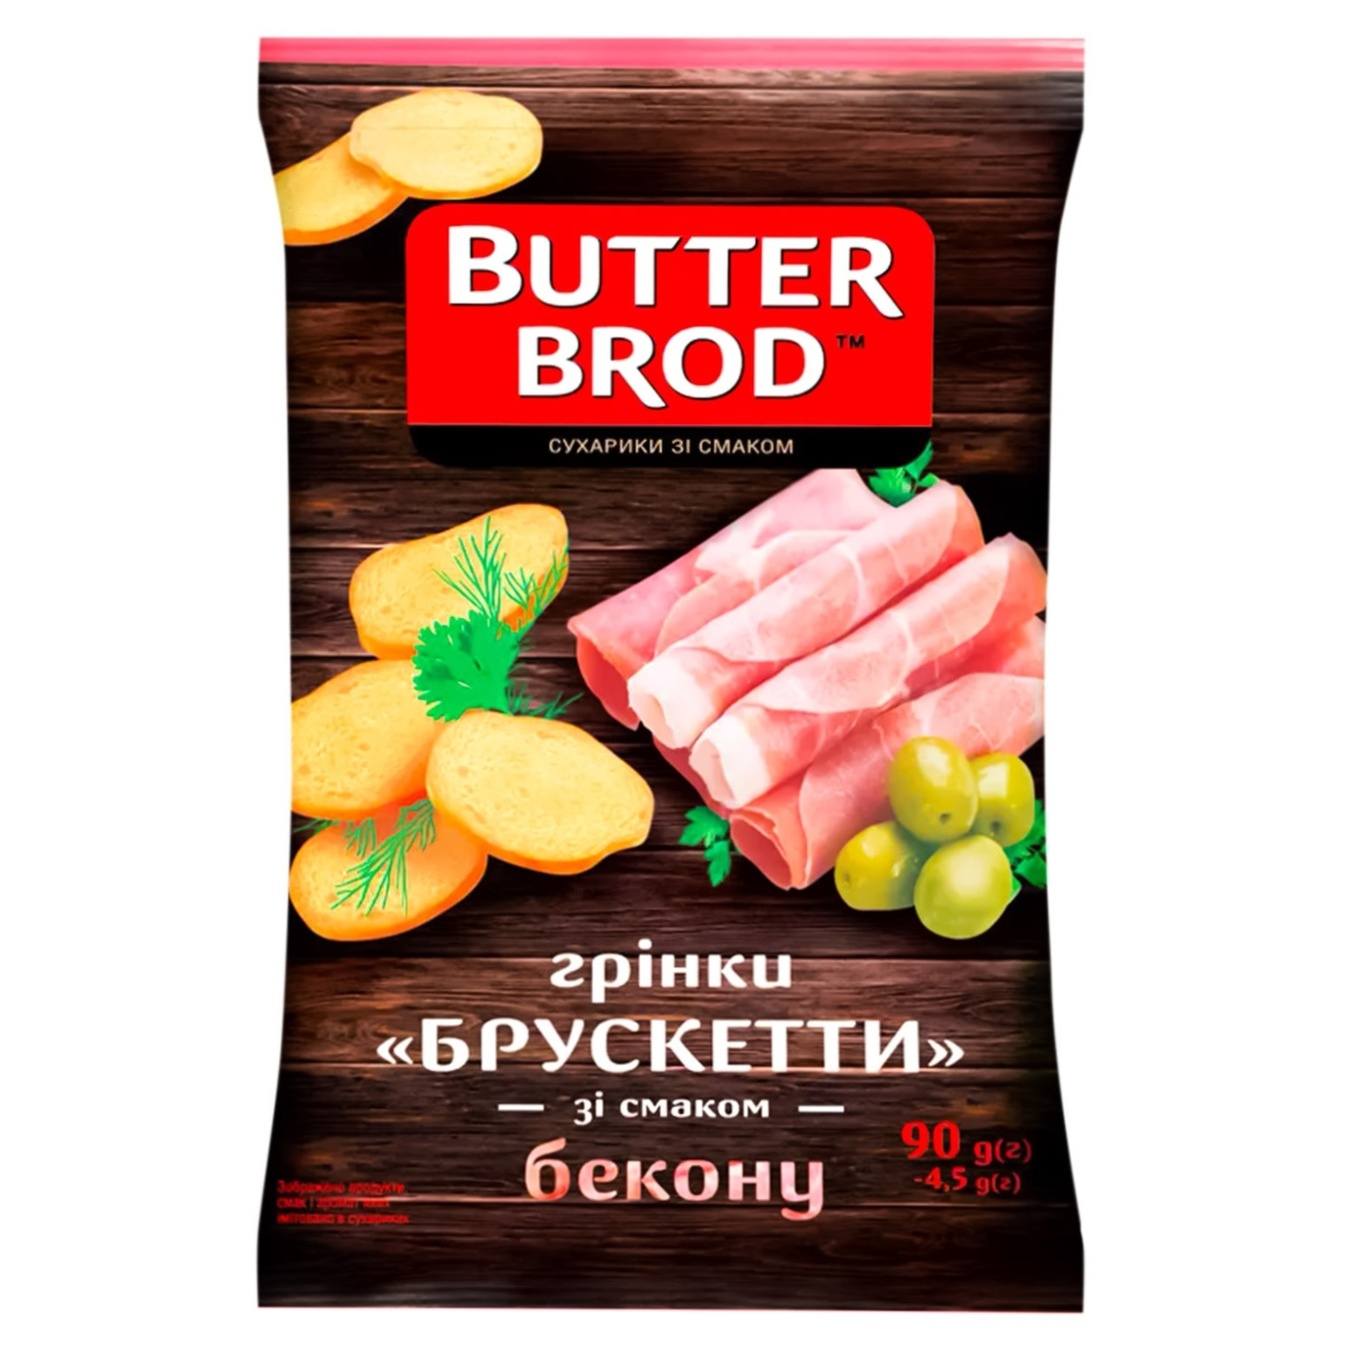 Butterbrod croutons bacon bruschetta 90g